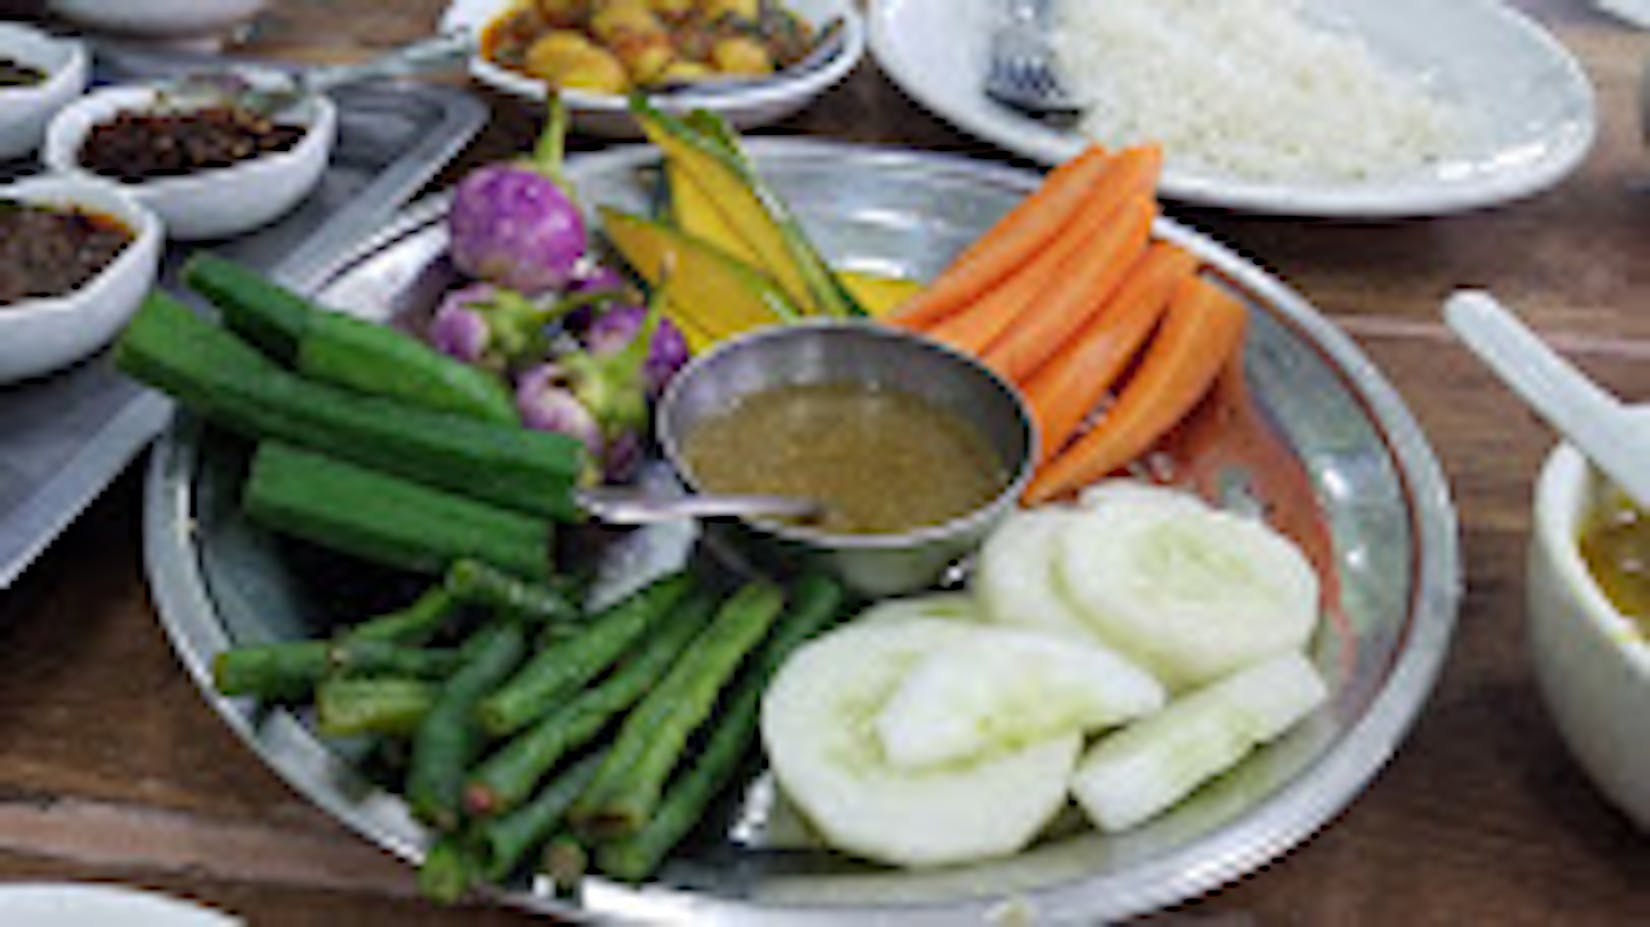 Shwe Ohm Pin Myanmar Food | yathar